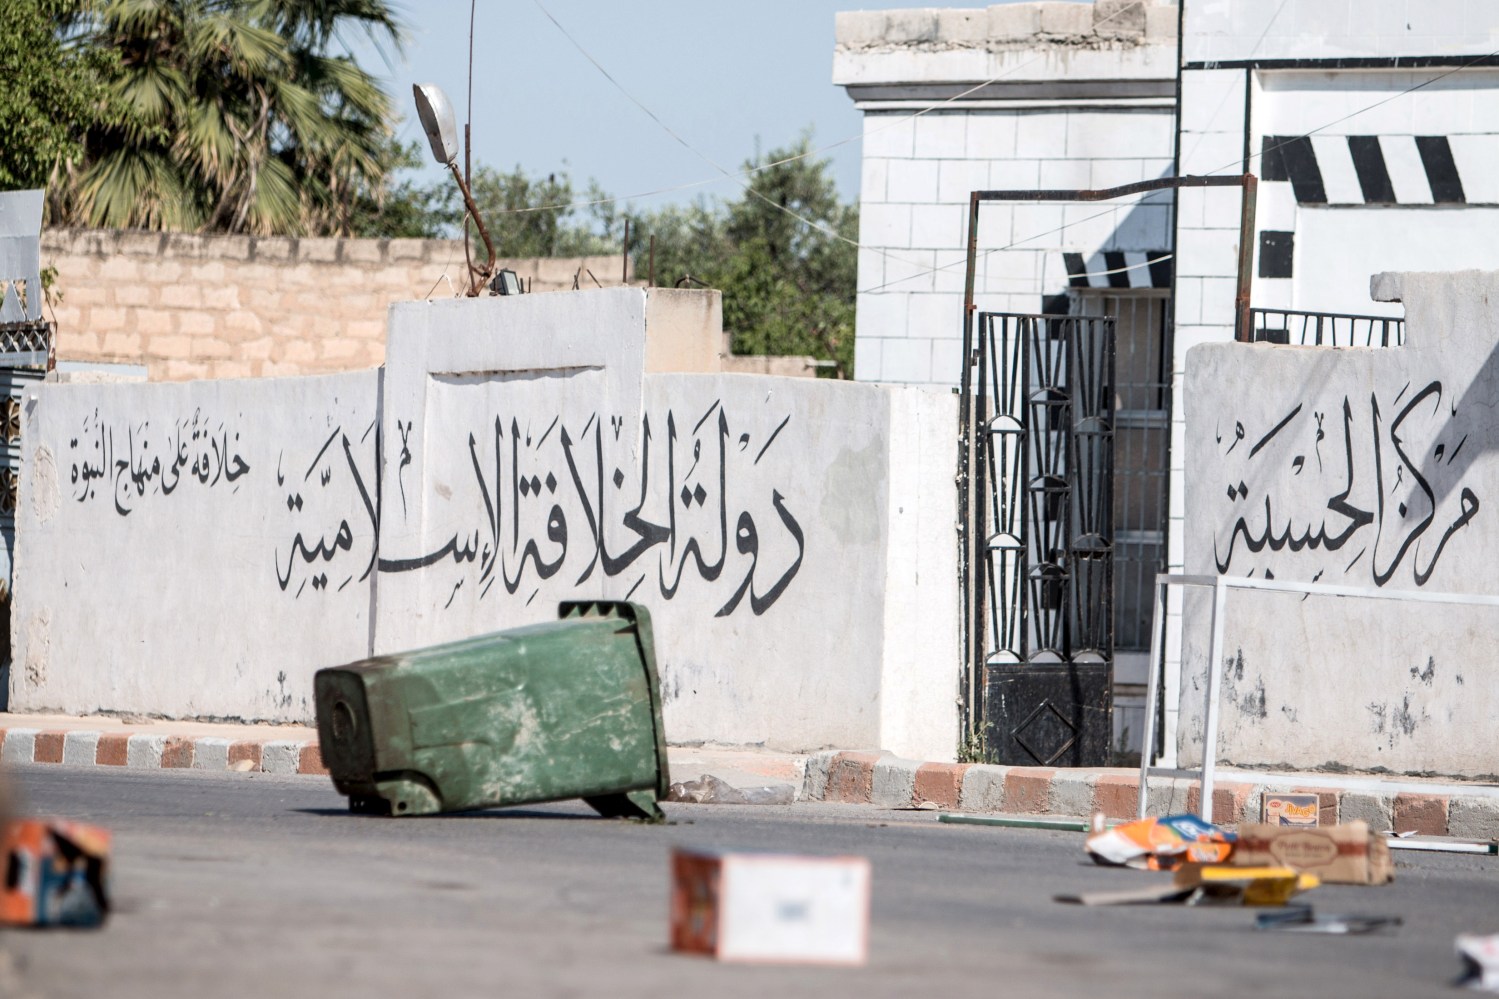 Arabic writing on wall in Syria